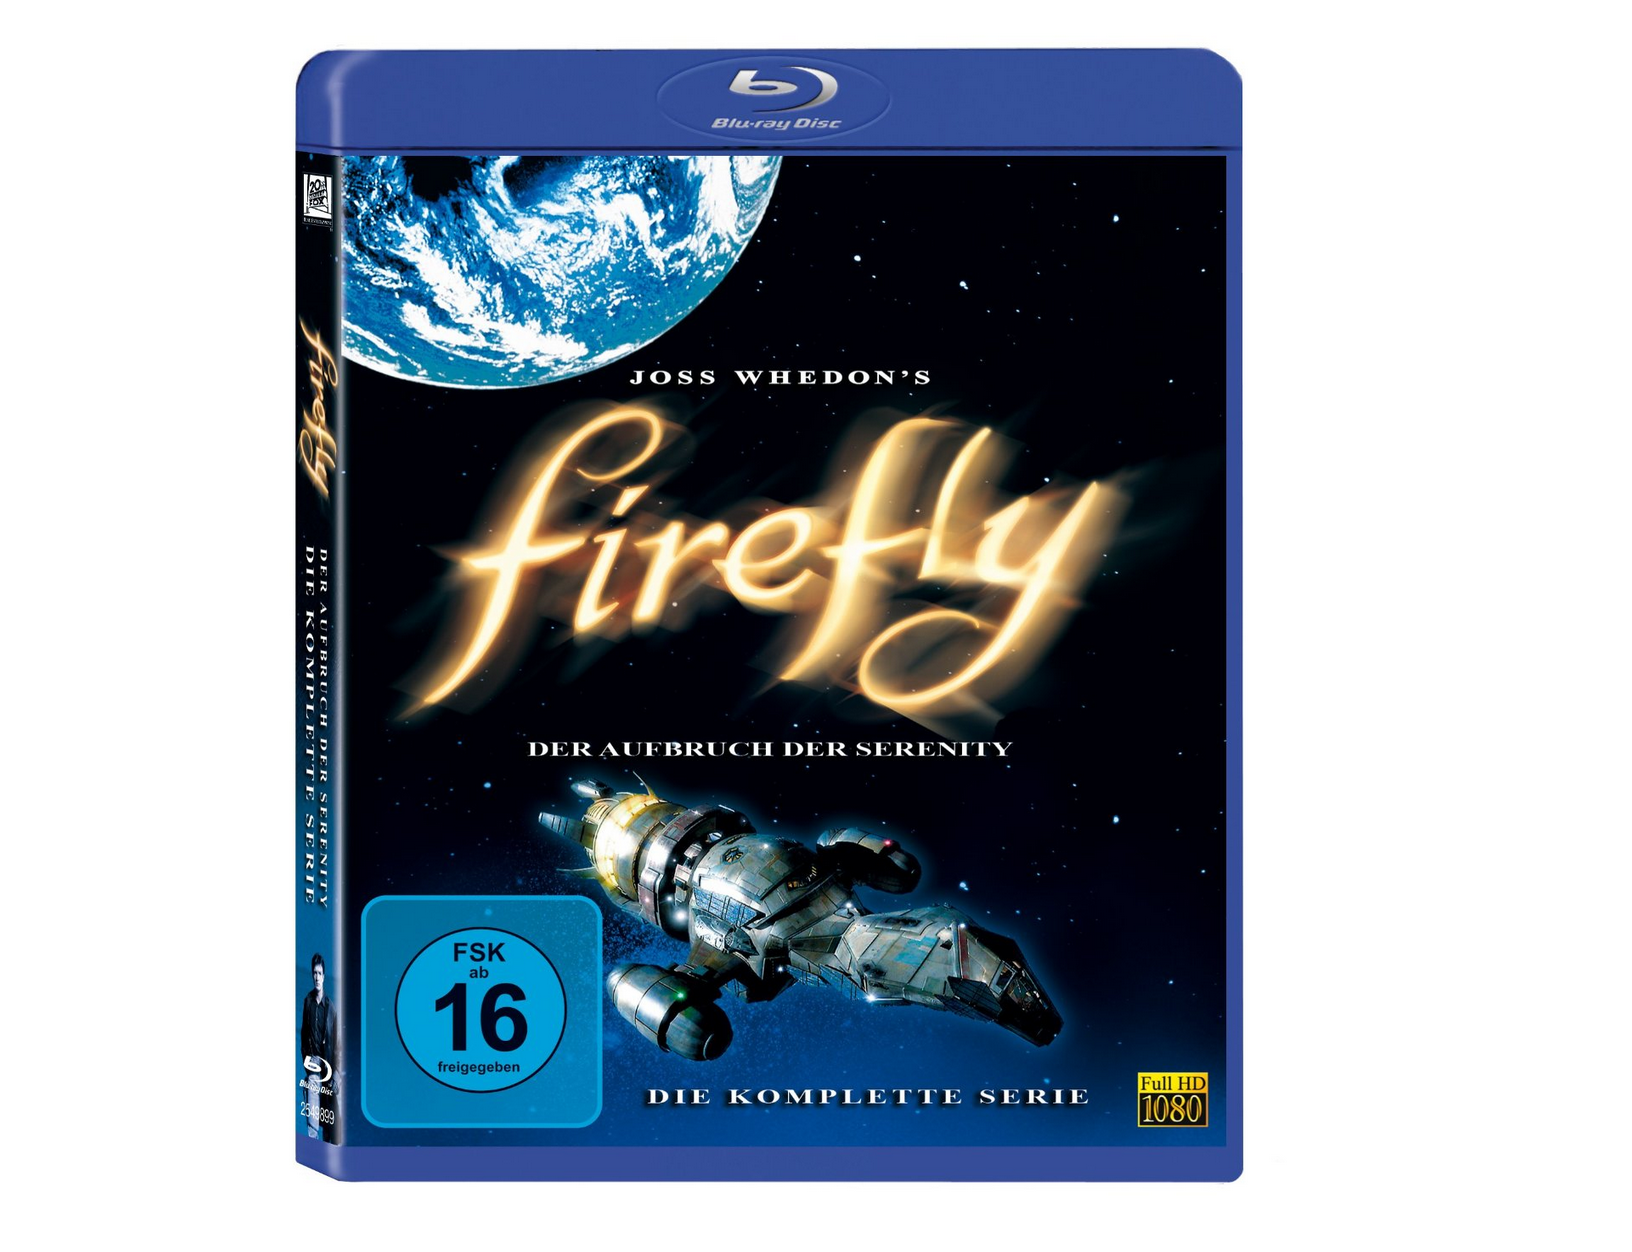 Firefly – Der Aufbruch der Serenity: Die komplette Serie [Blu-ray] für nur 12,97 Euro bei Prime Versand